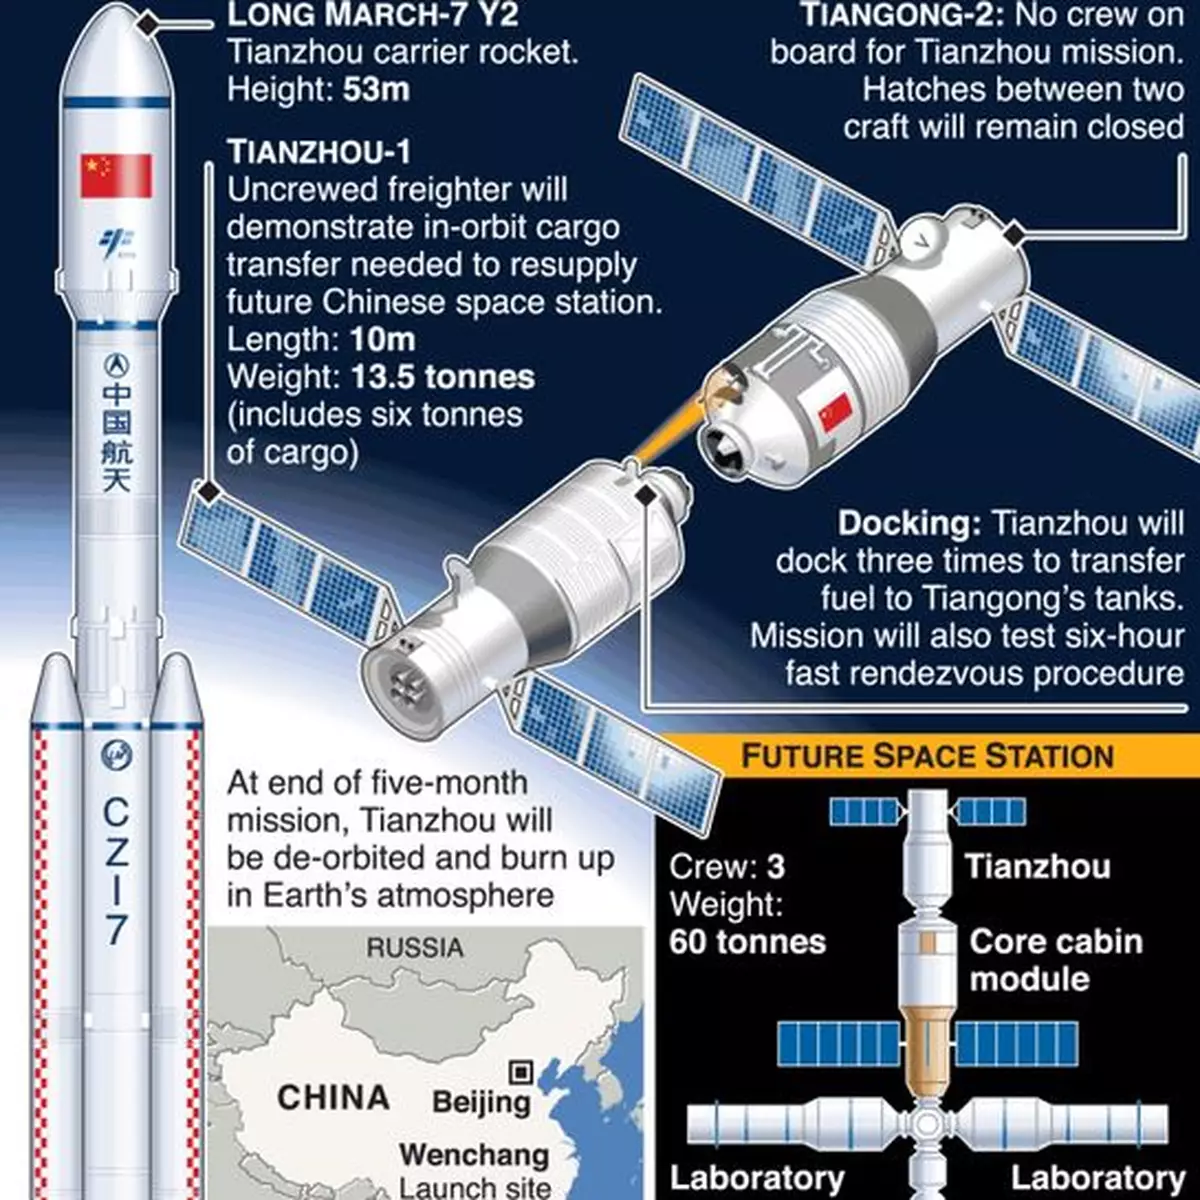 「天舟一號」運載力超美俄 對中國建太空站意義重大